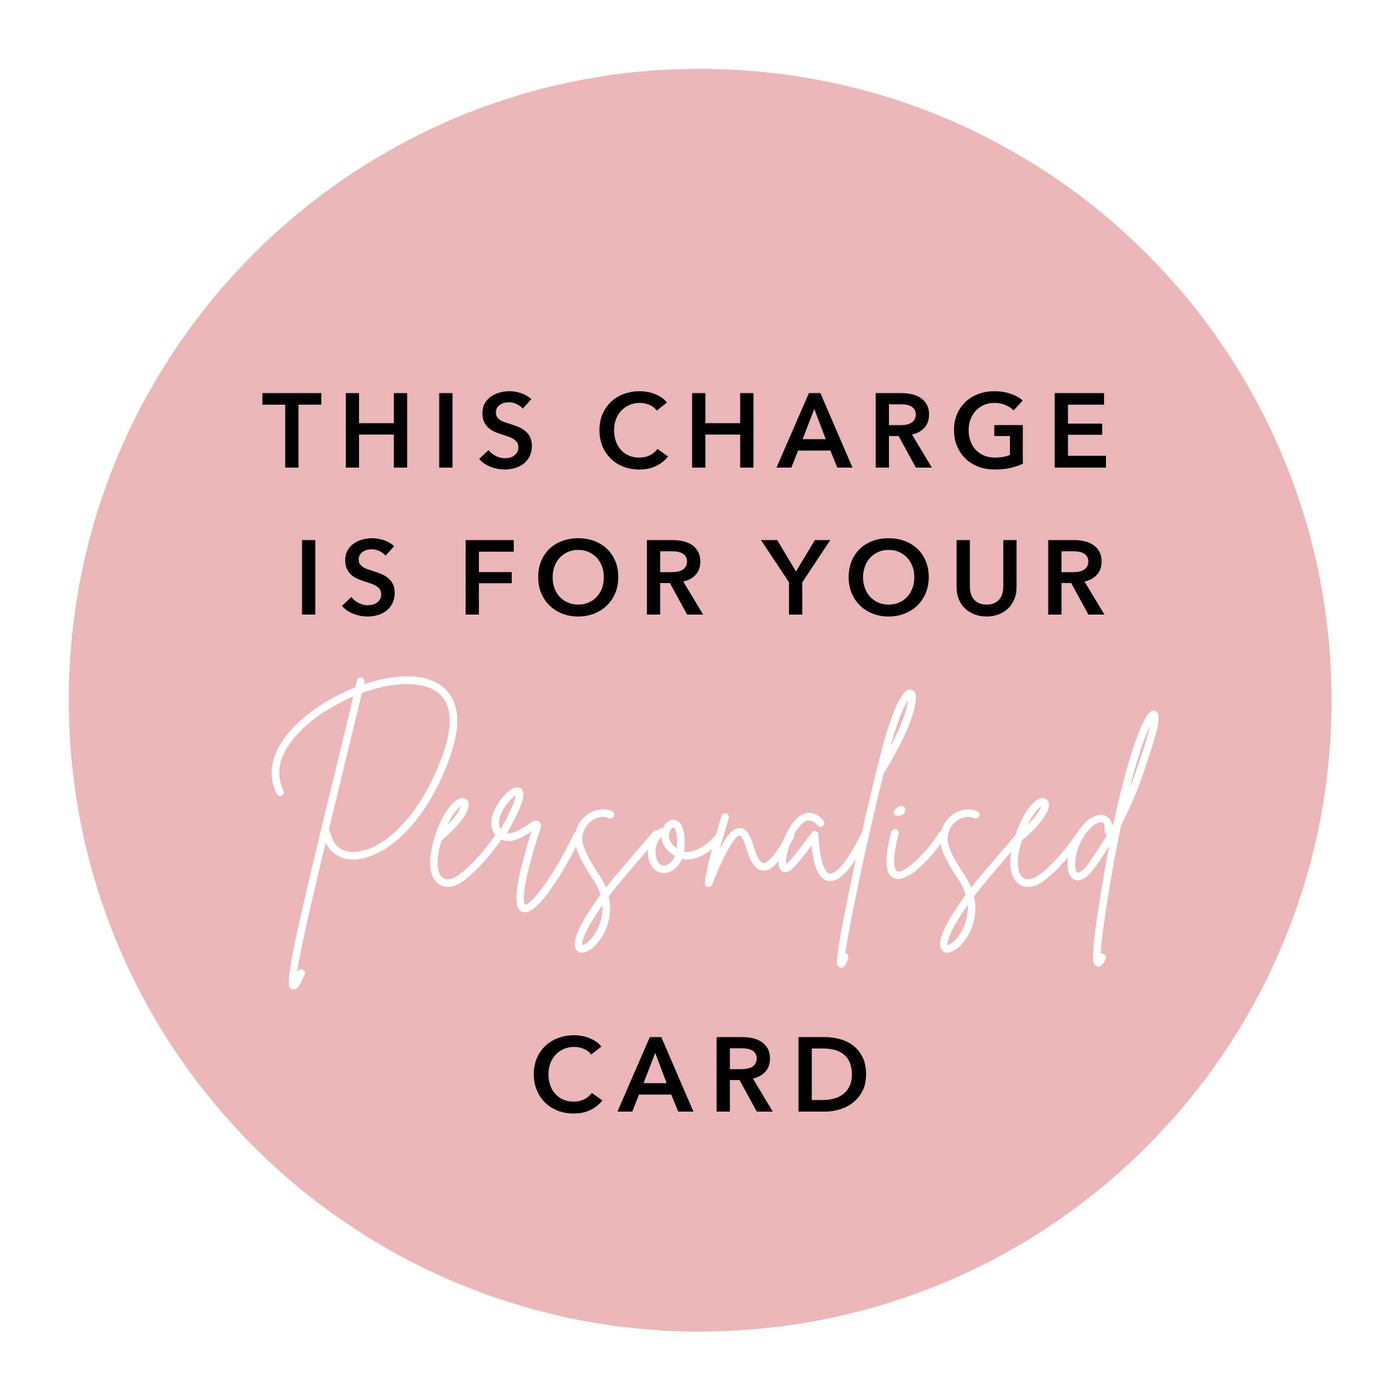 Personalised Card Fee